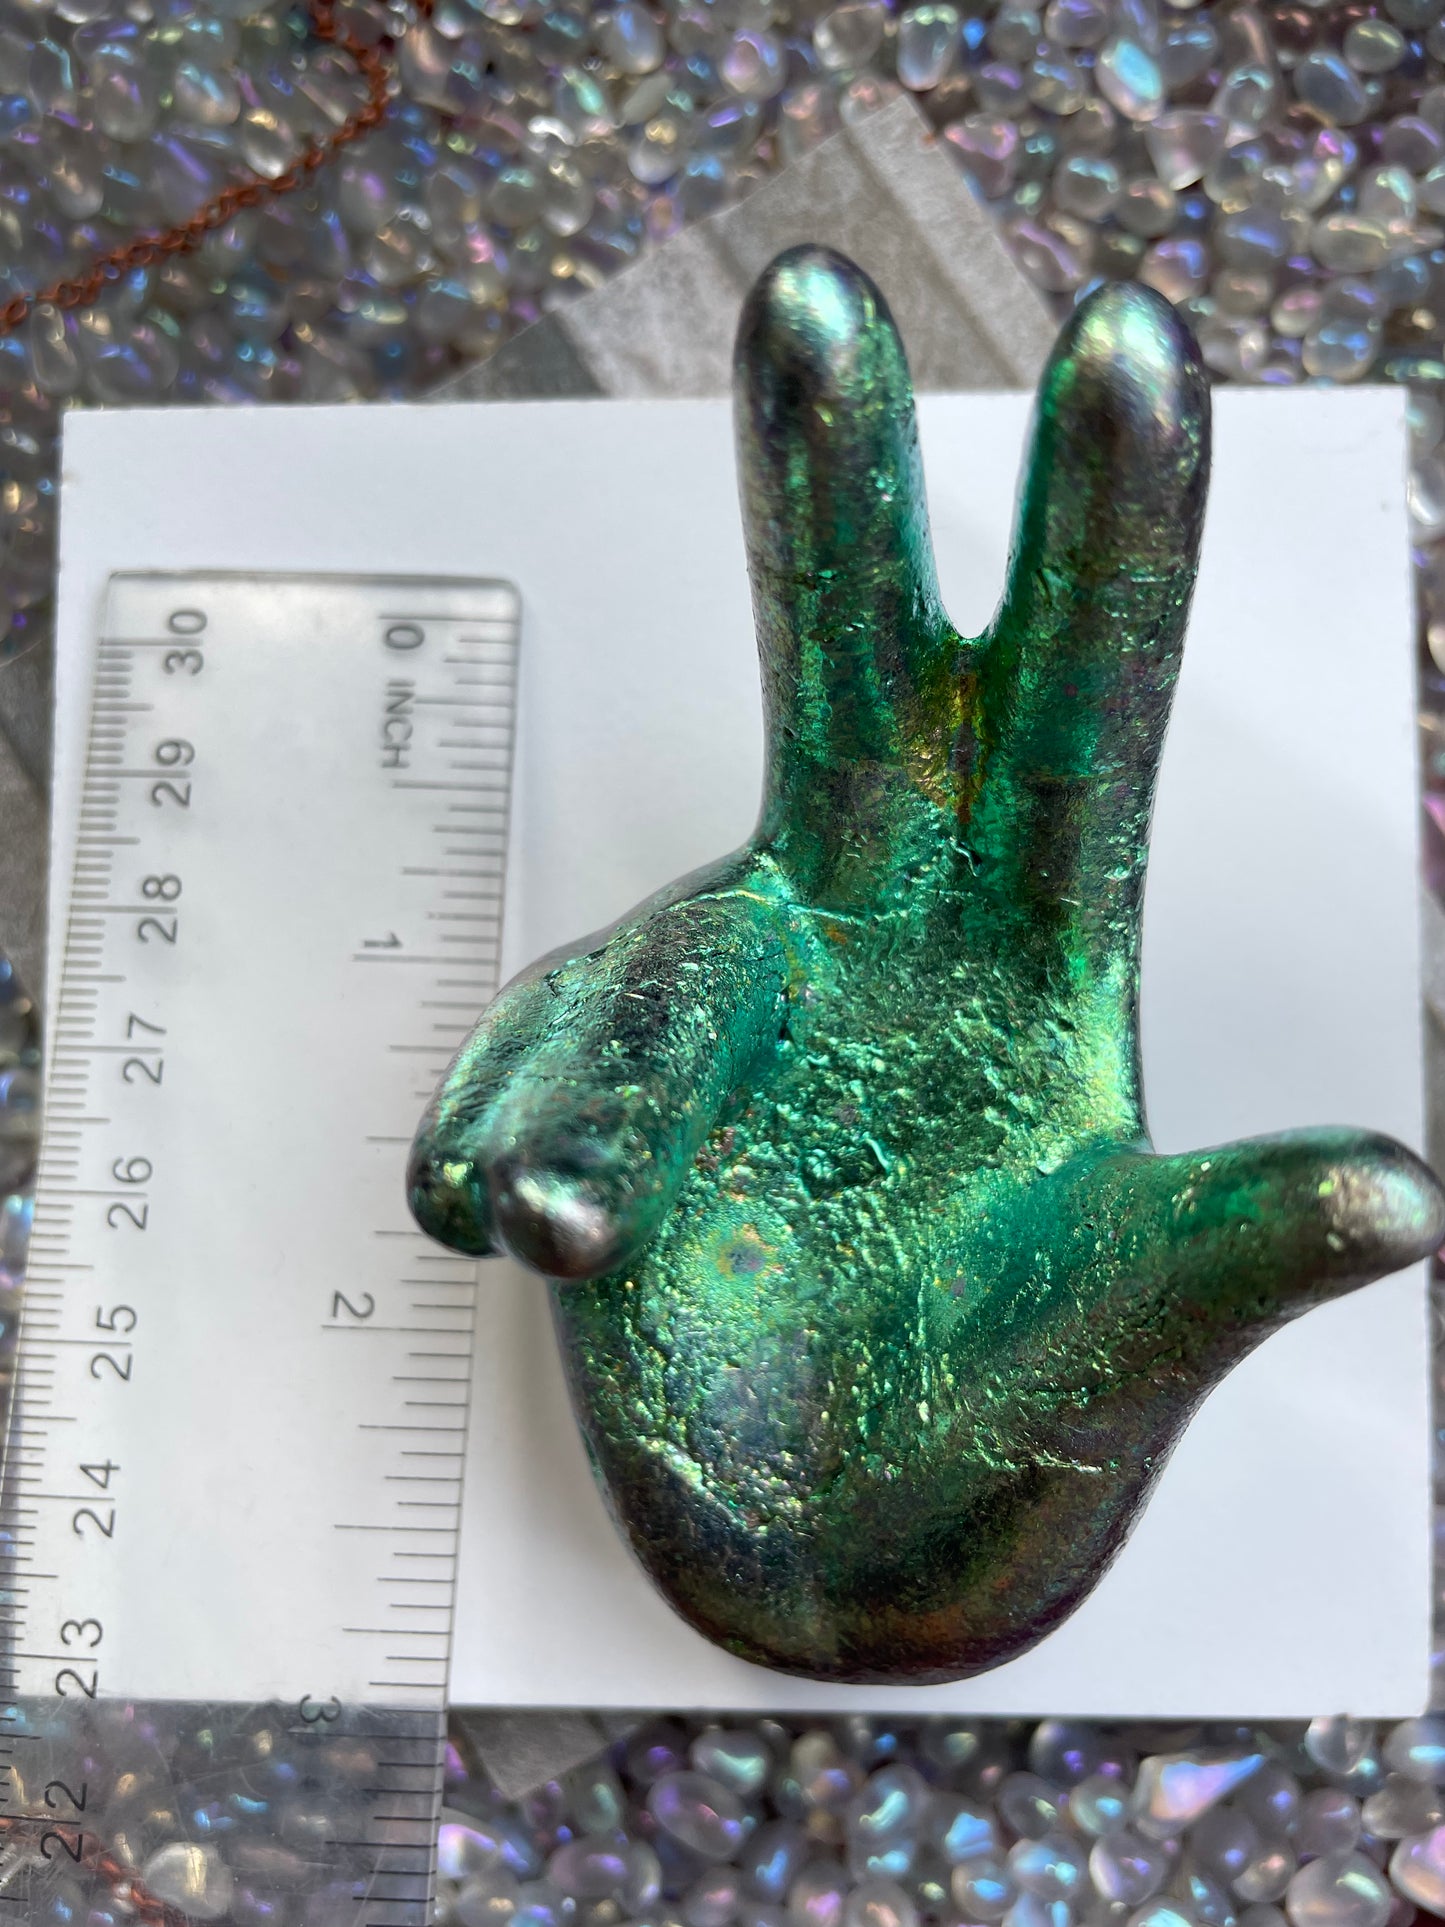 Blue Teal Bismuth Crystal Hand Sphere Holder - Metal Art Sculpture